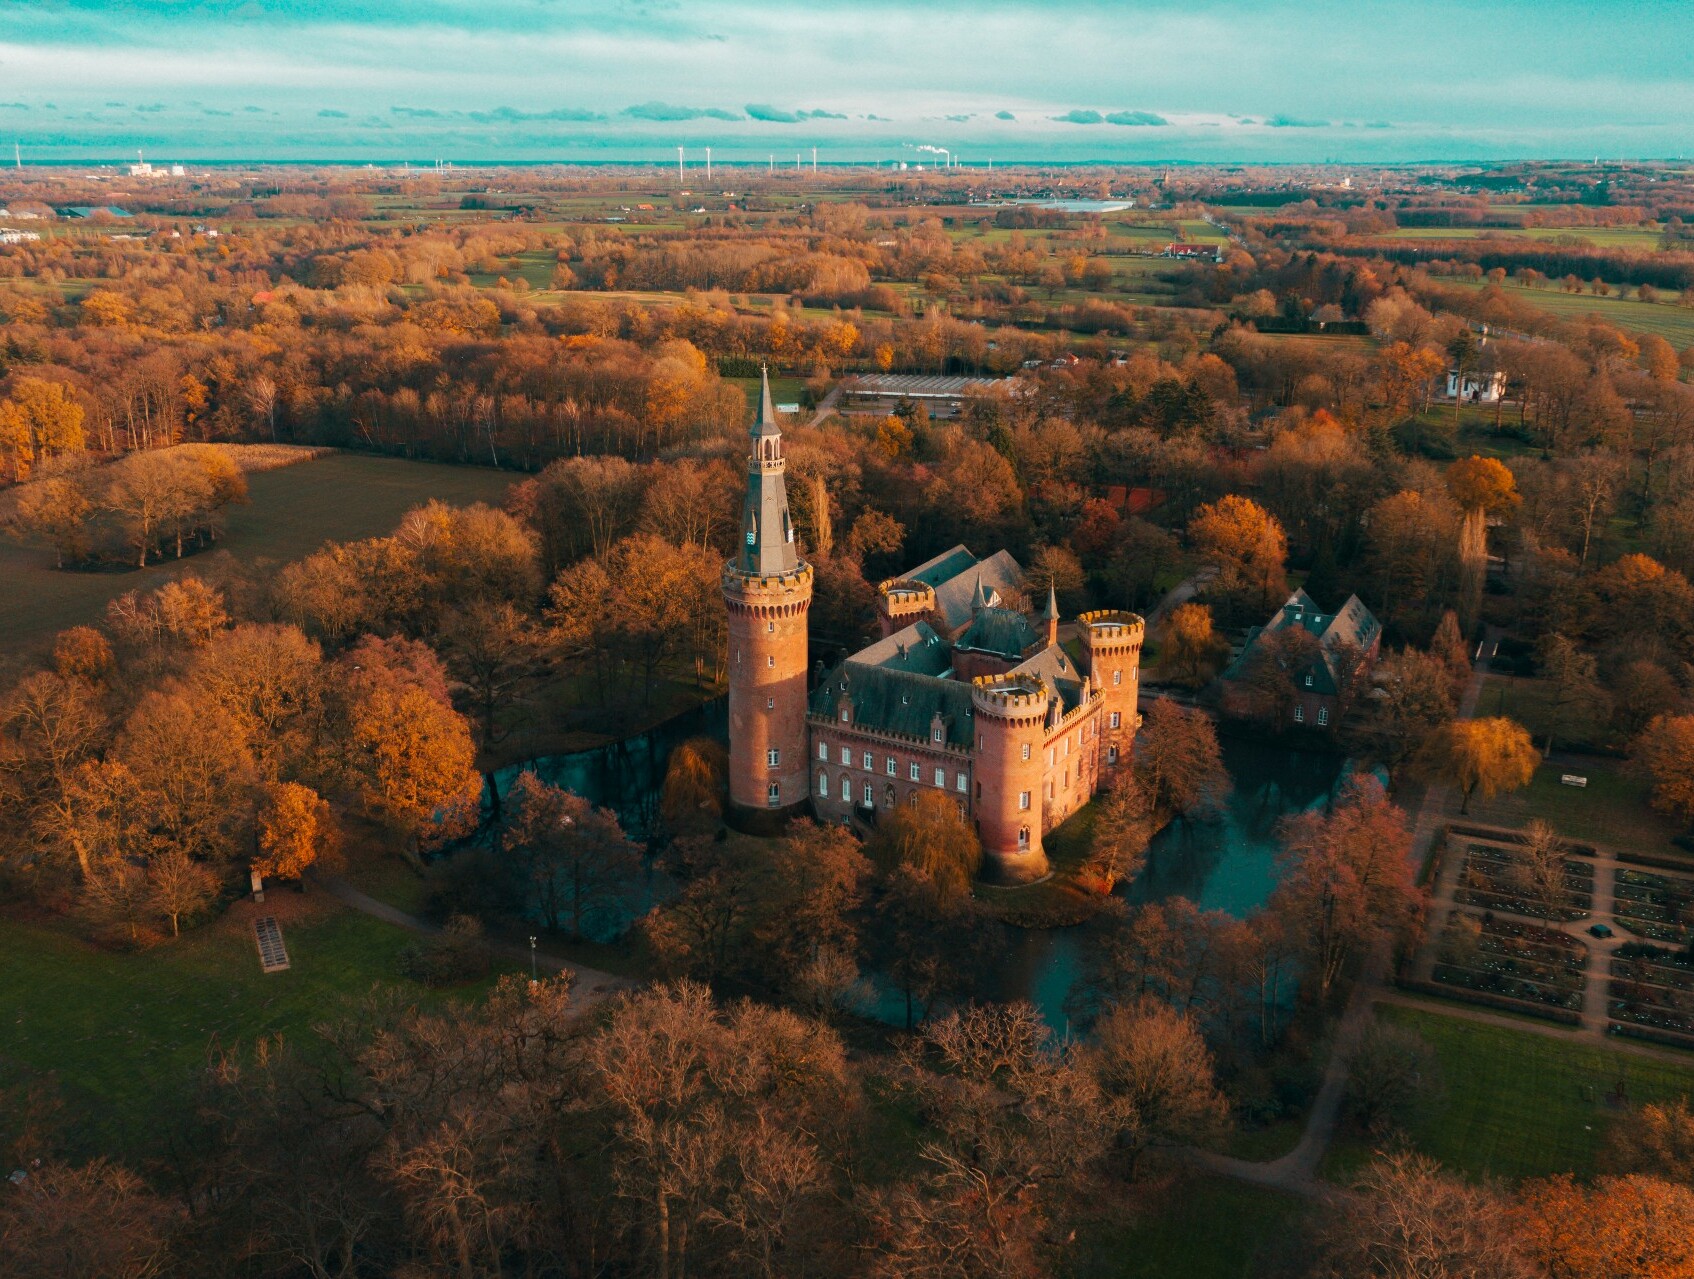 Drohnenaufnahme von Schloss Moyland in Bedburg-Hau am Niederrhein, umgeben von in rotes Licht getauchten Wäldern und Feldern